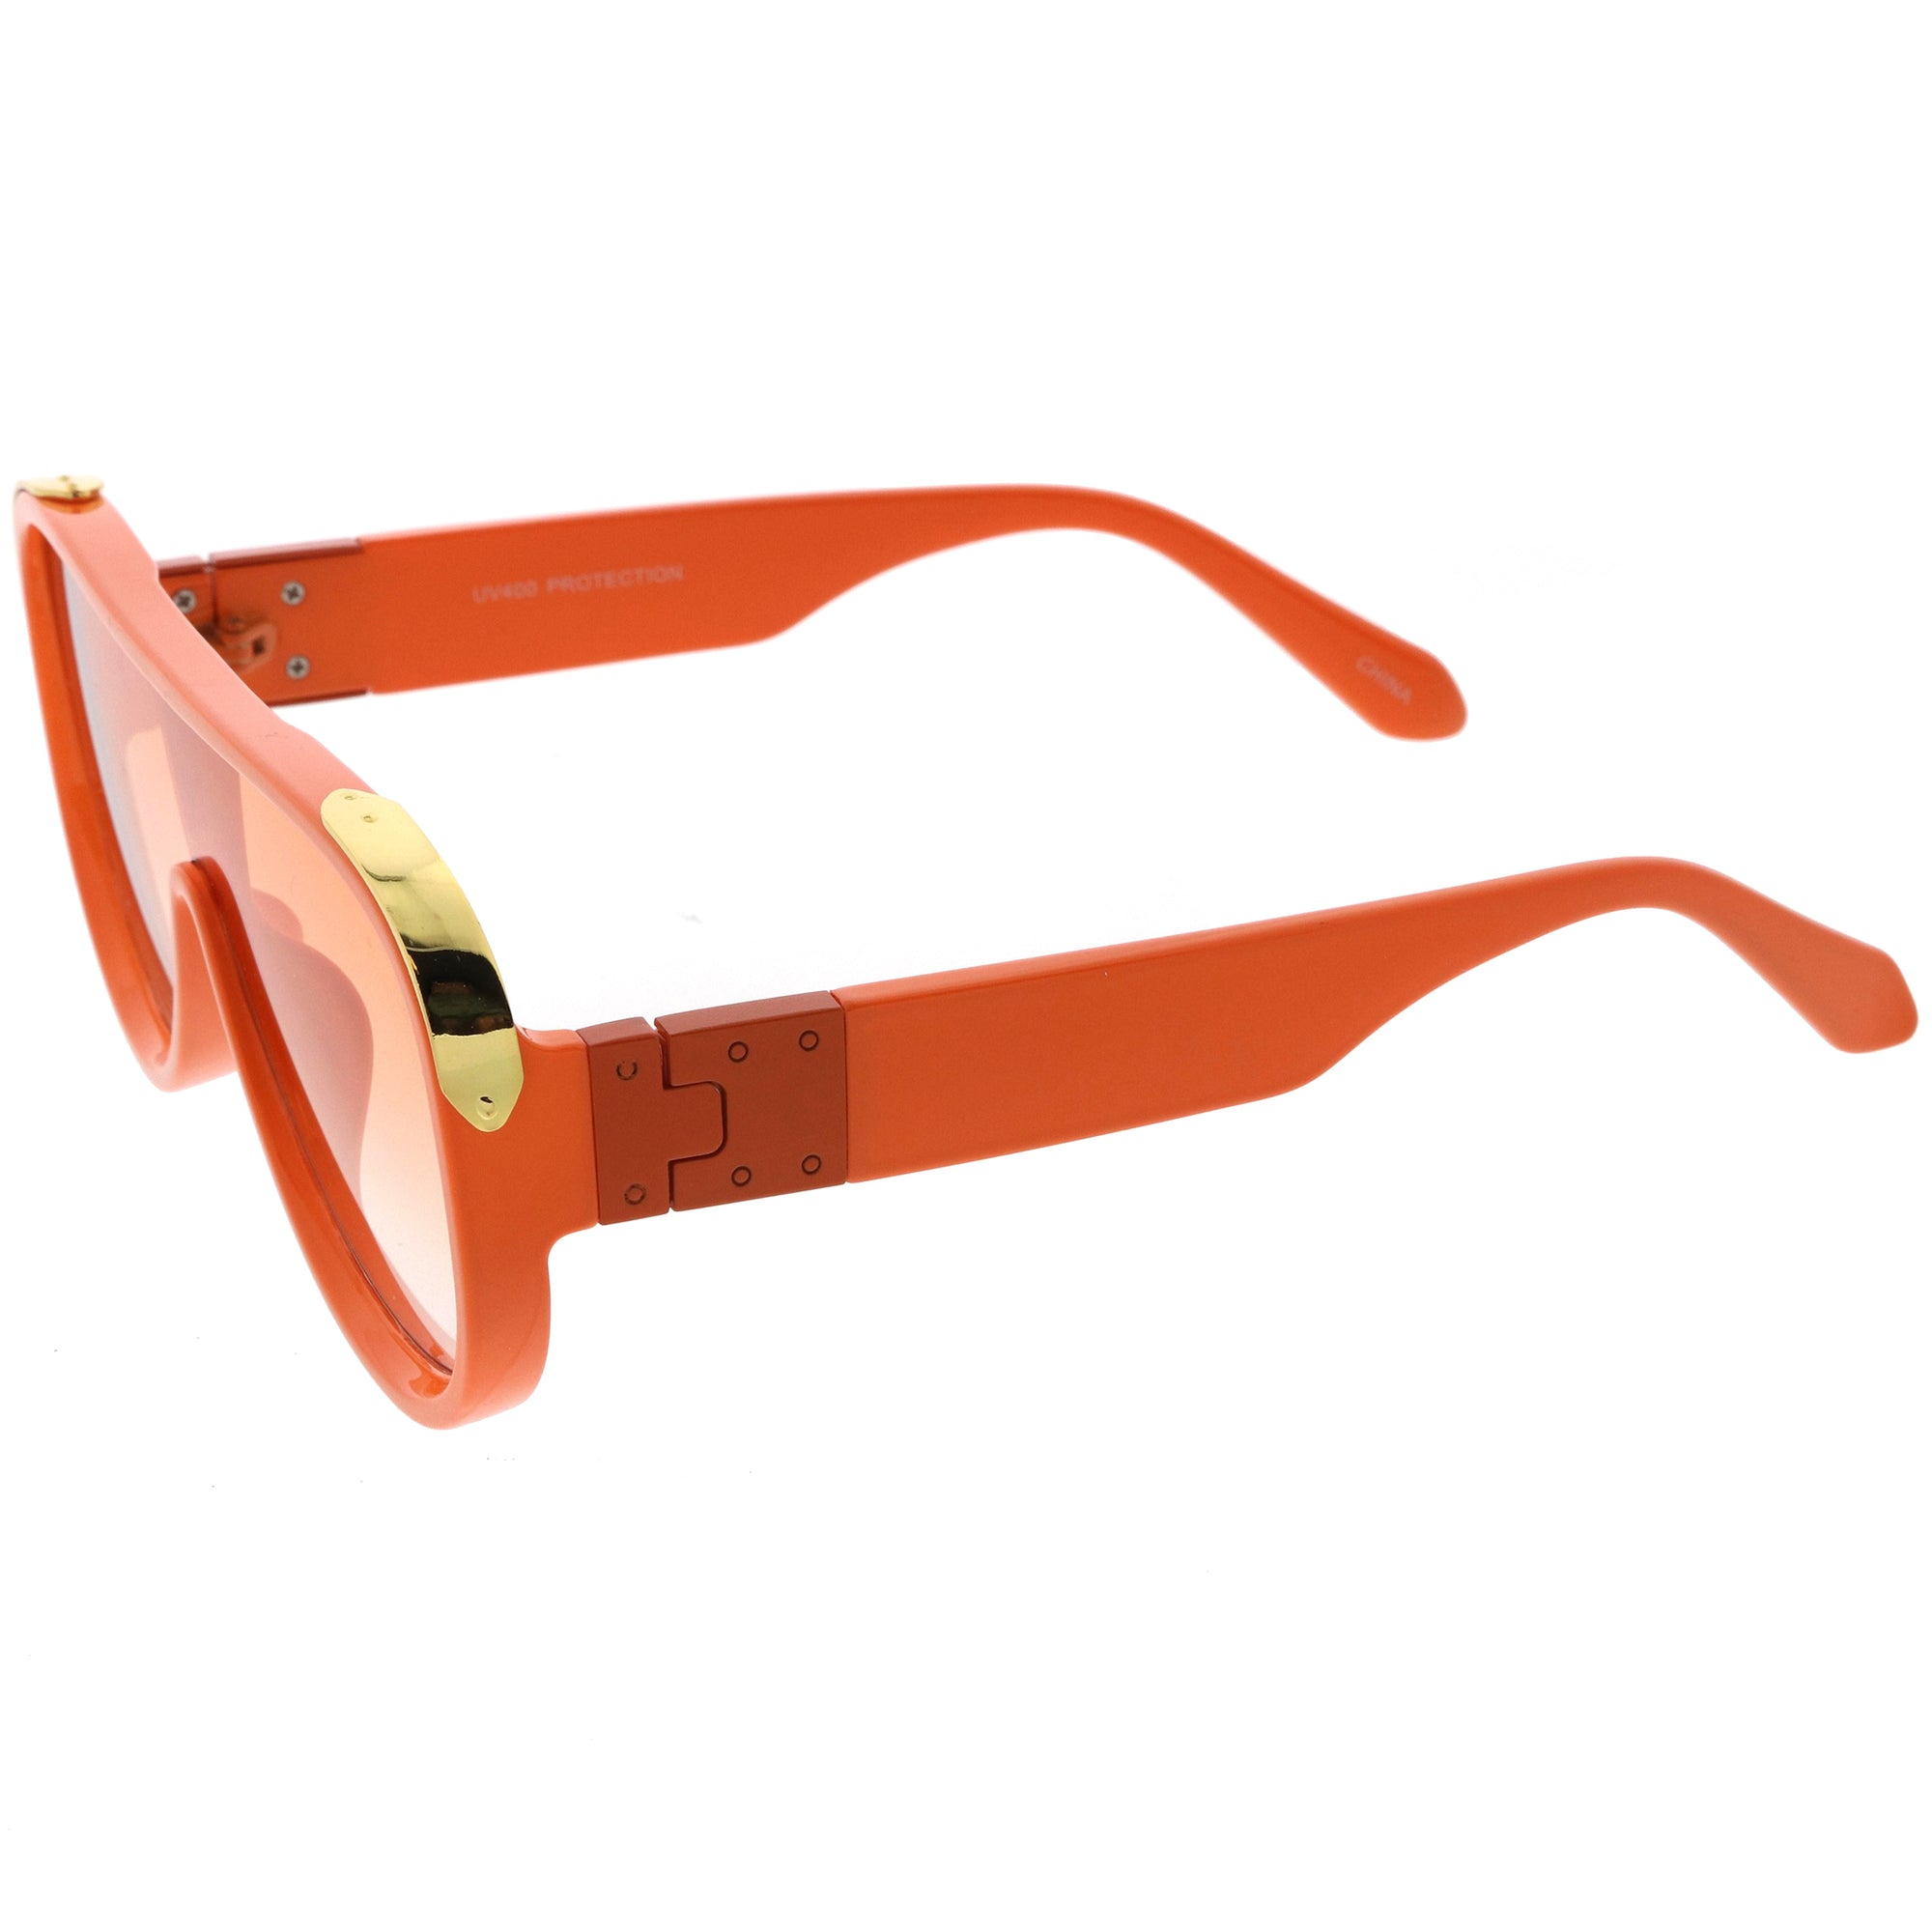 lv flat top sunglasses